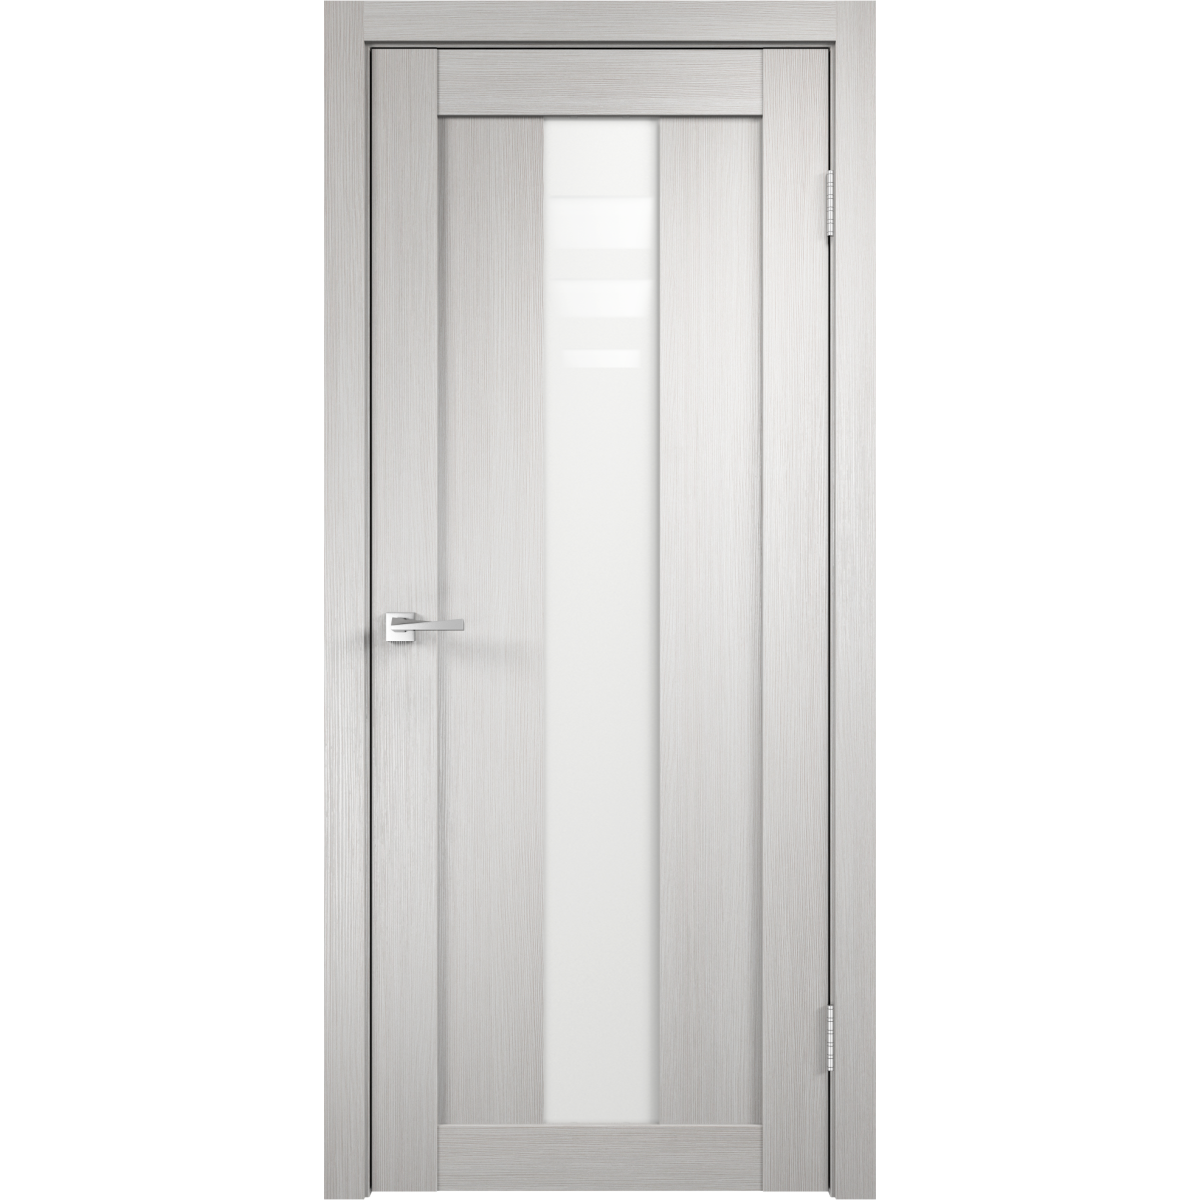 Дверь межкомнатная остеклённая Фортуна 70x200 см, ПВХ, цвет белый дуб